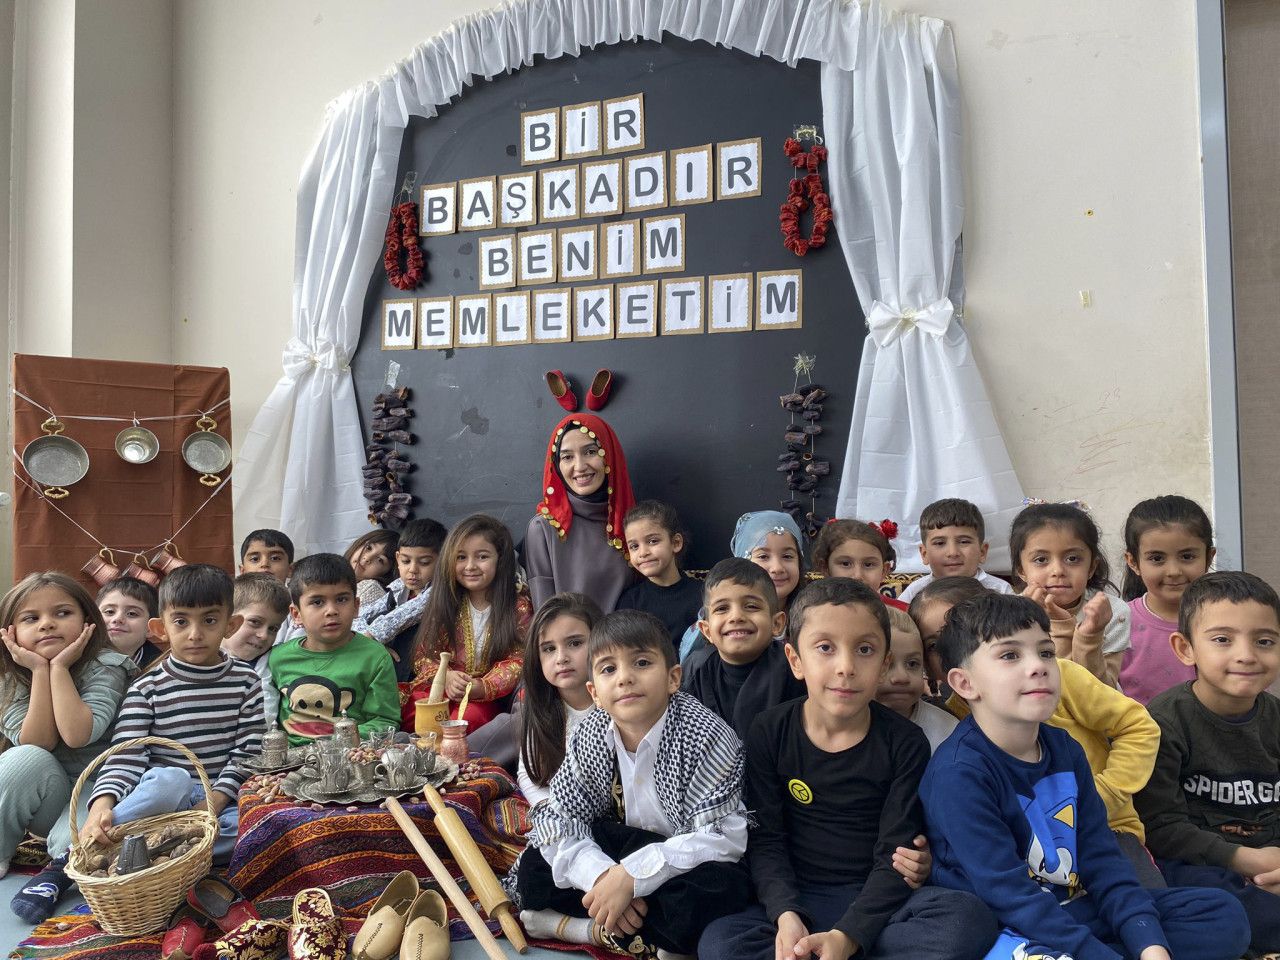 Gaziantep'teki Minik Öğrenciler Yerli Malı Haftası'nda Kültürlerini Kutluyor